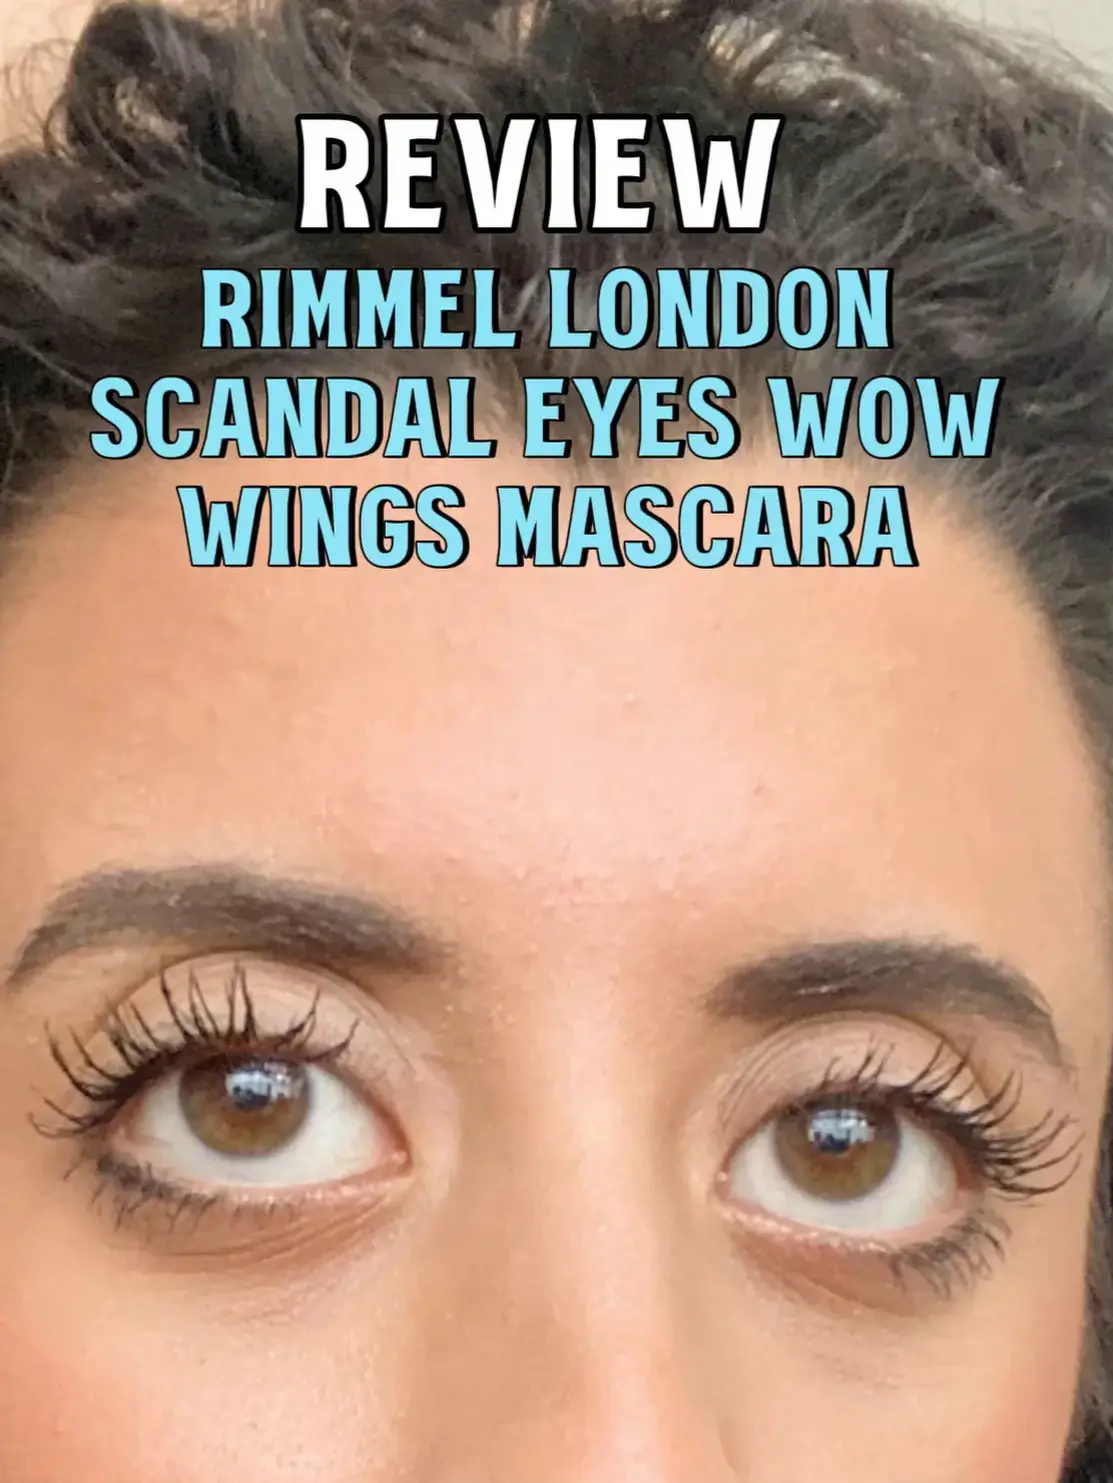 Rimmel London Scandal Eyes Wow Wings